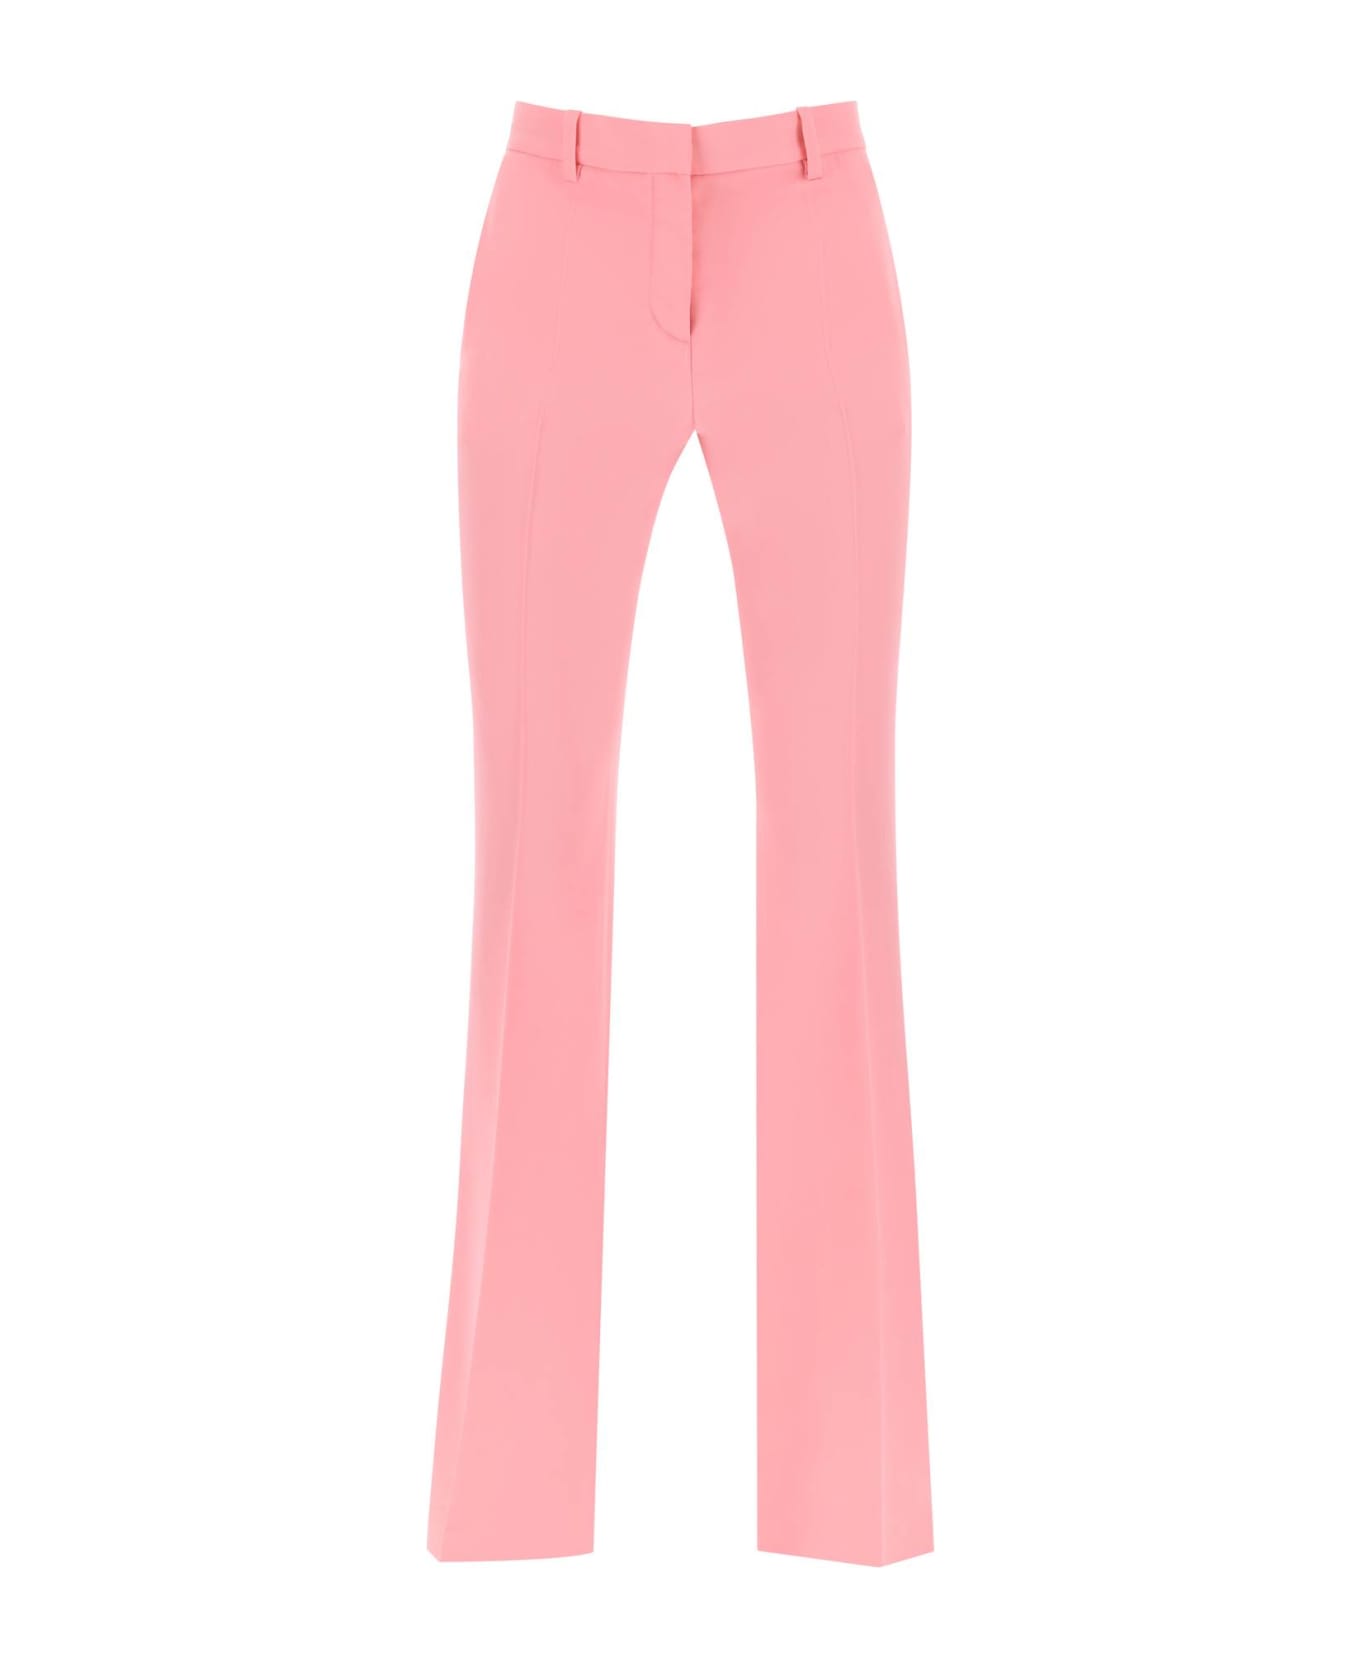 Versace Informal Pant Responsible Wool Tailoring Fabric - Pastel Pink